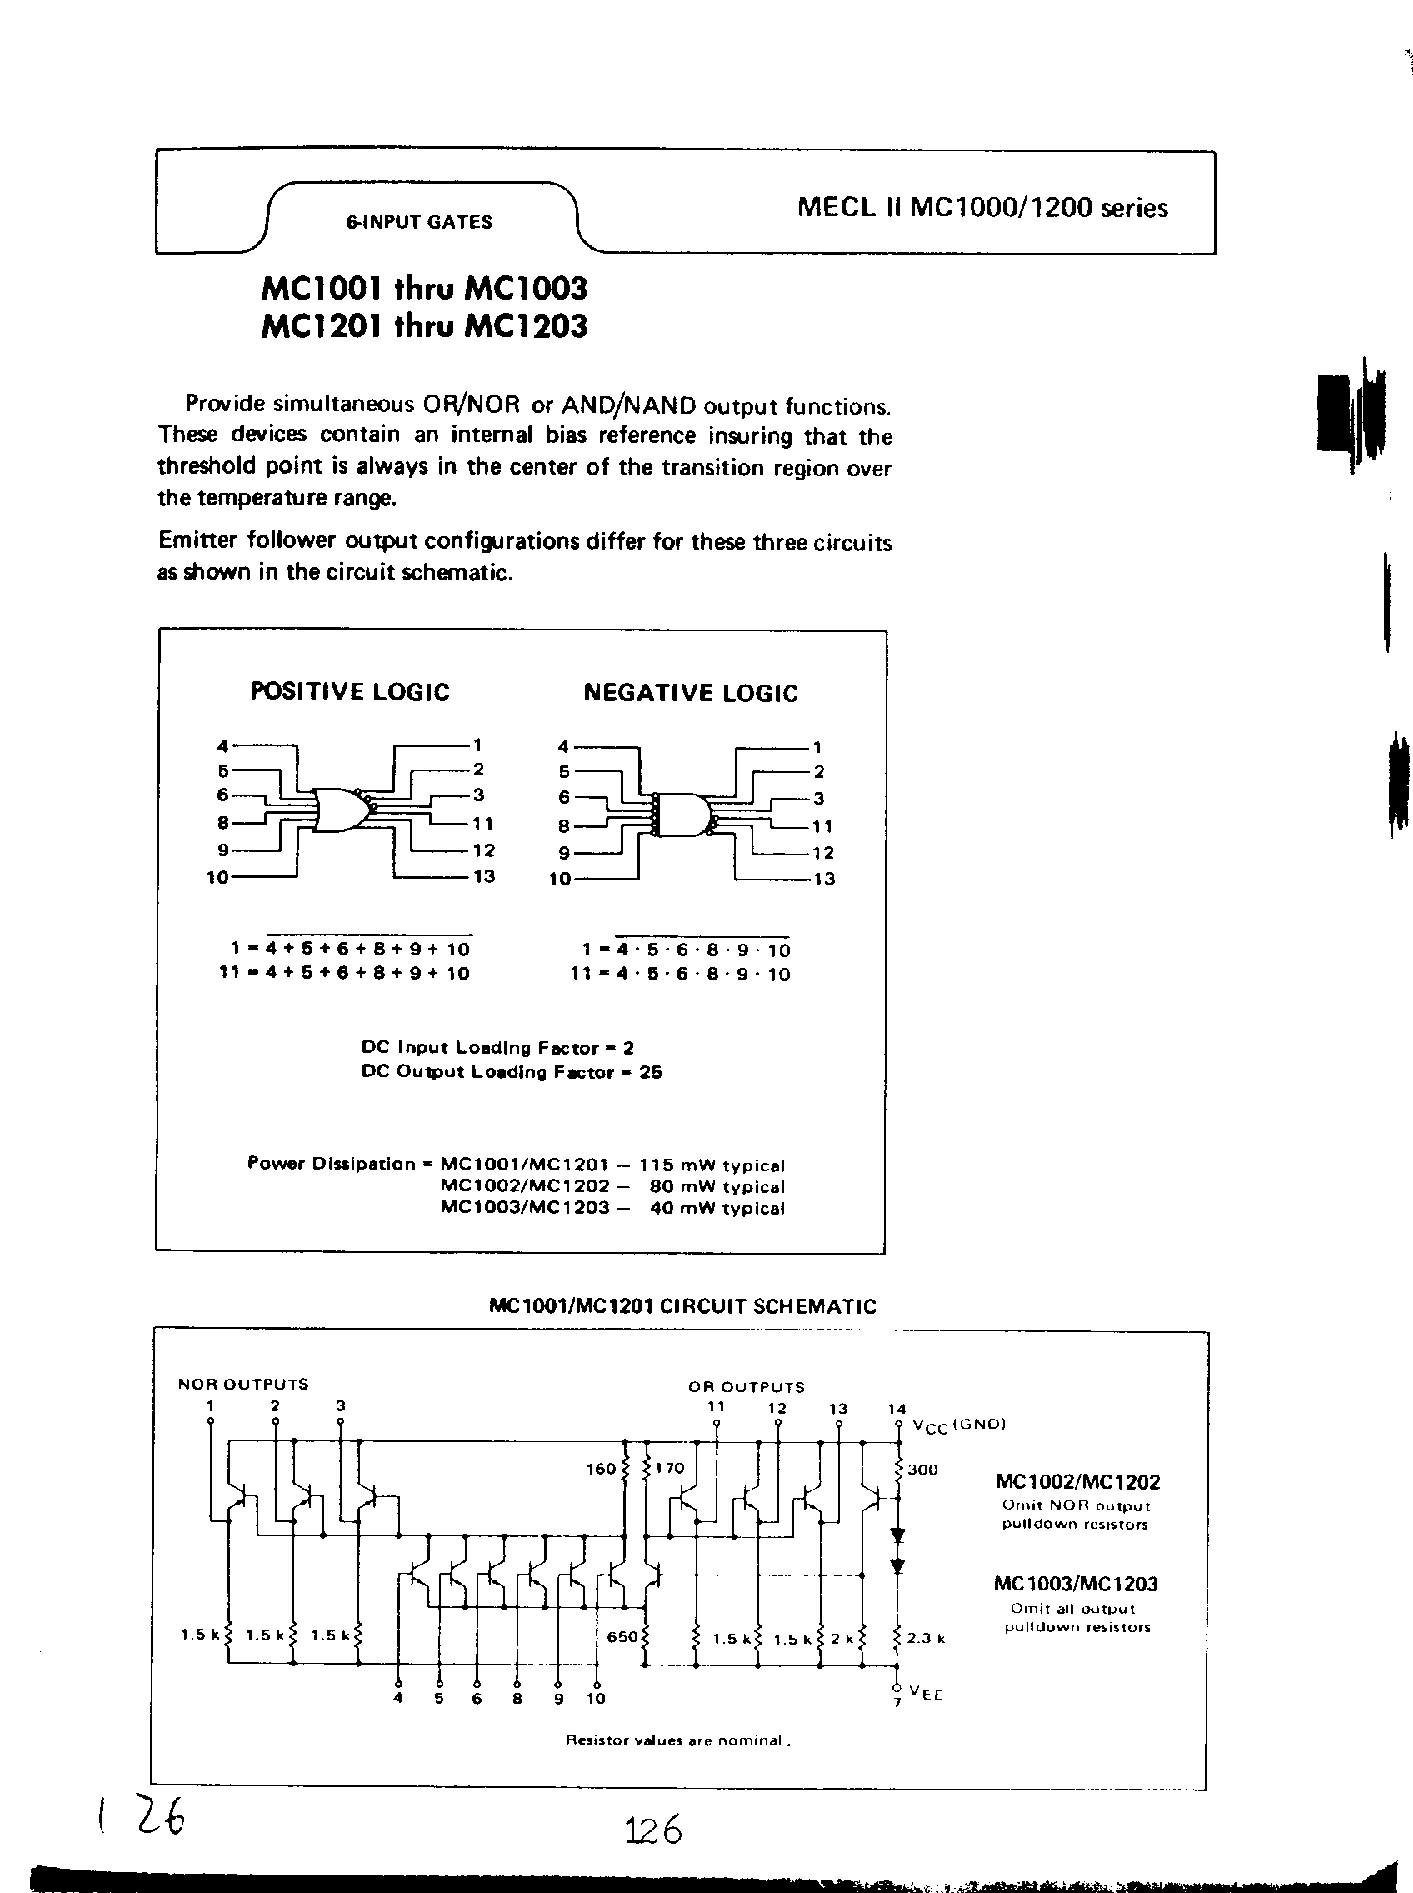 Datasheet MC1001 - (MC1002 / MC1003) 6 input Gates page 1